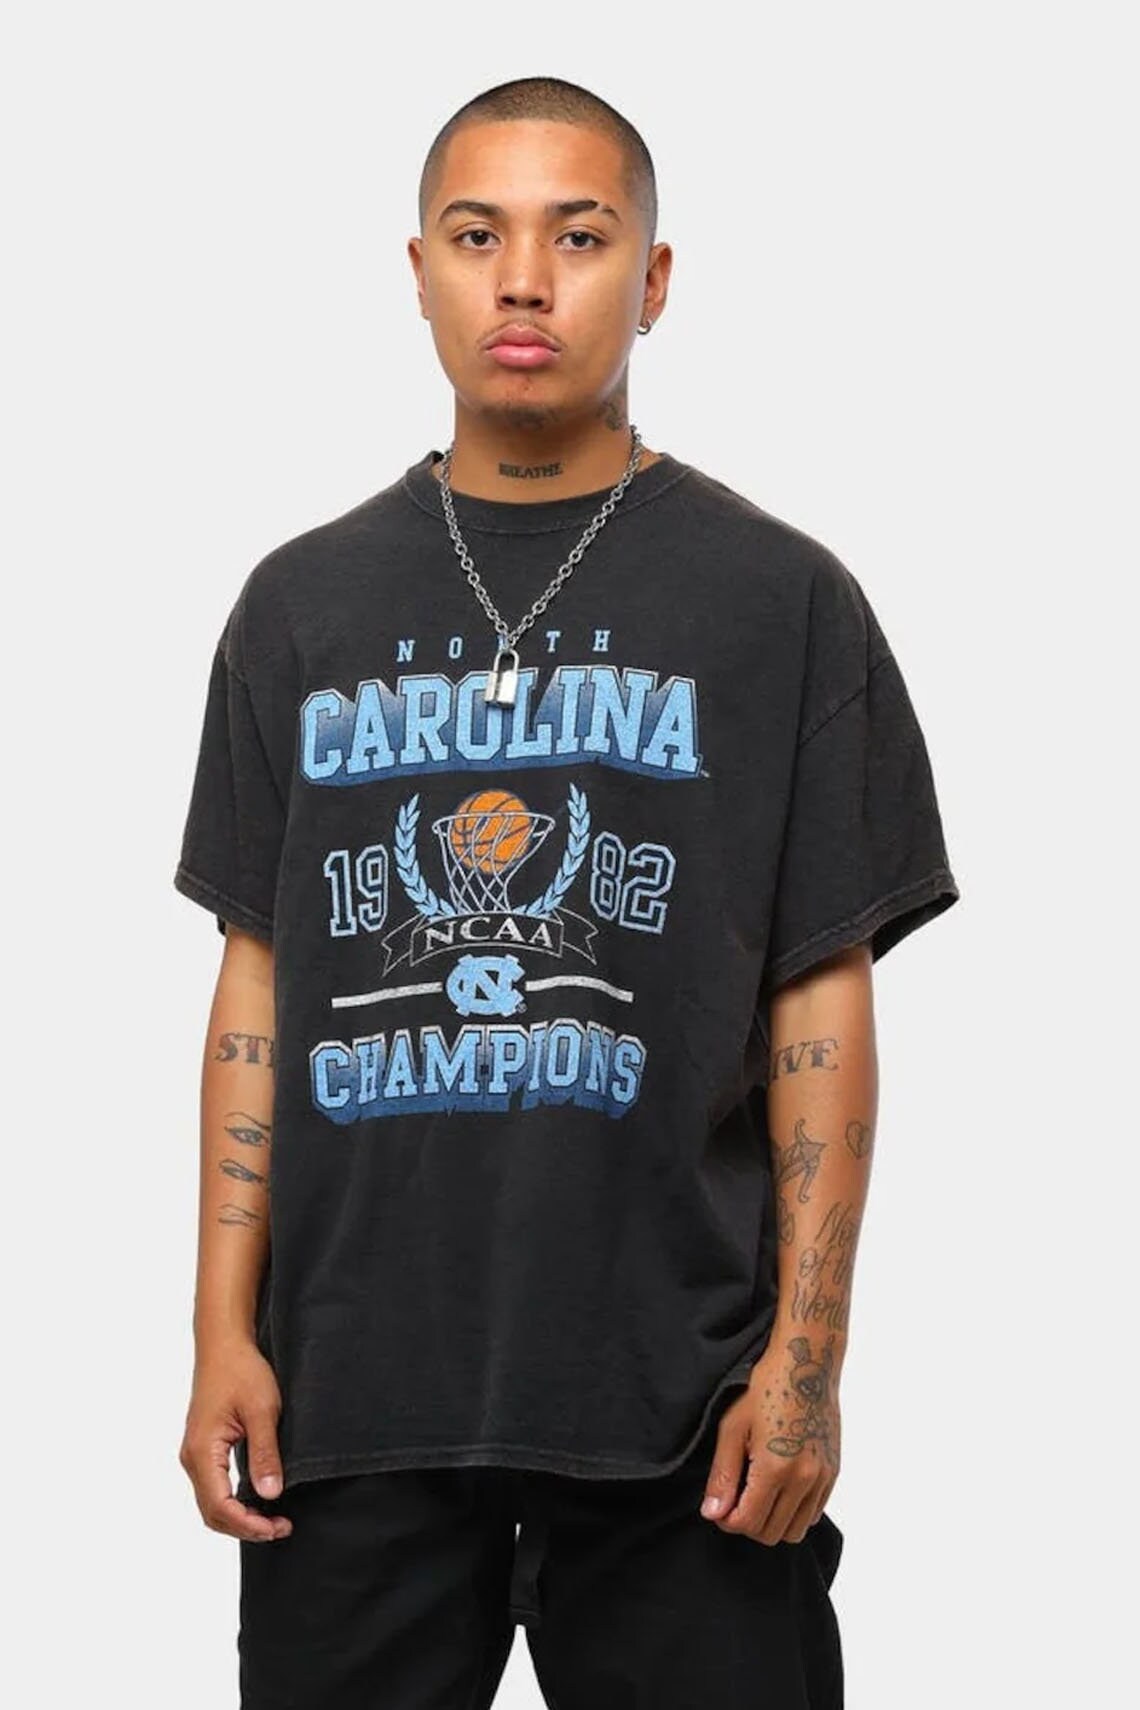 UNC Collegiate 82 Champions Vintage Shirt UNC Vintage NBA | Etsy